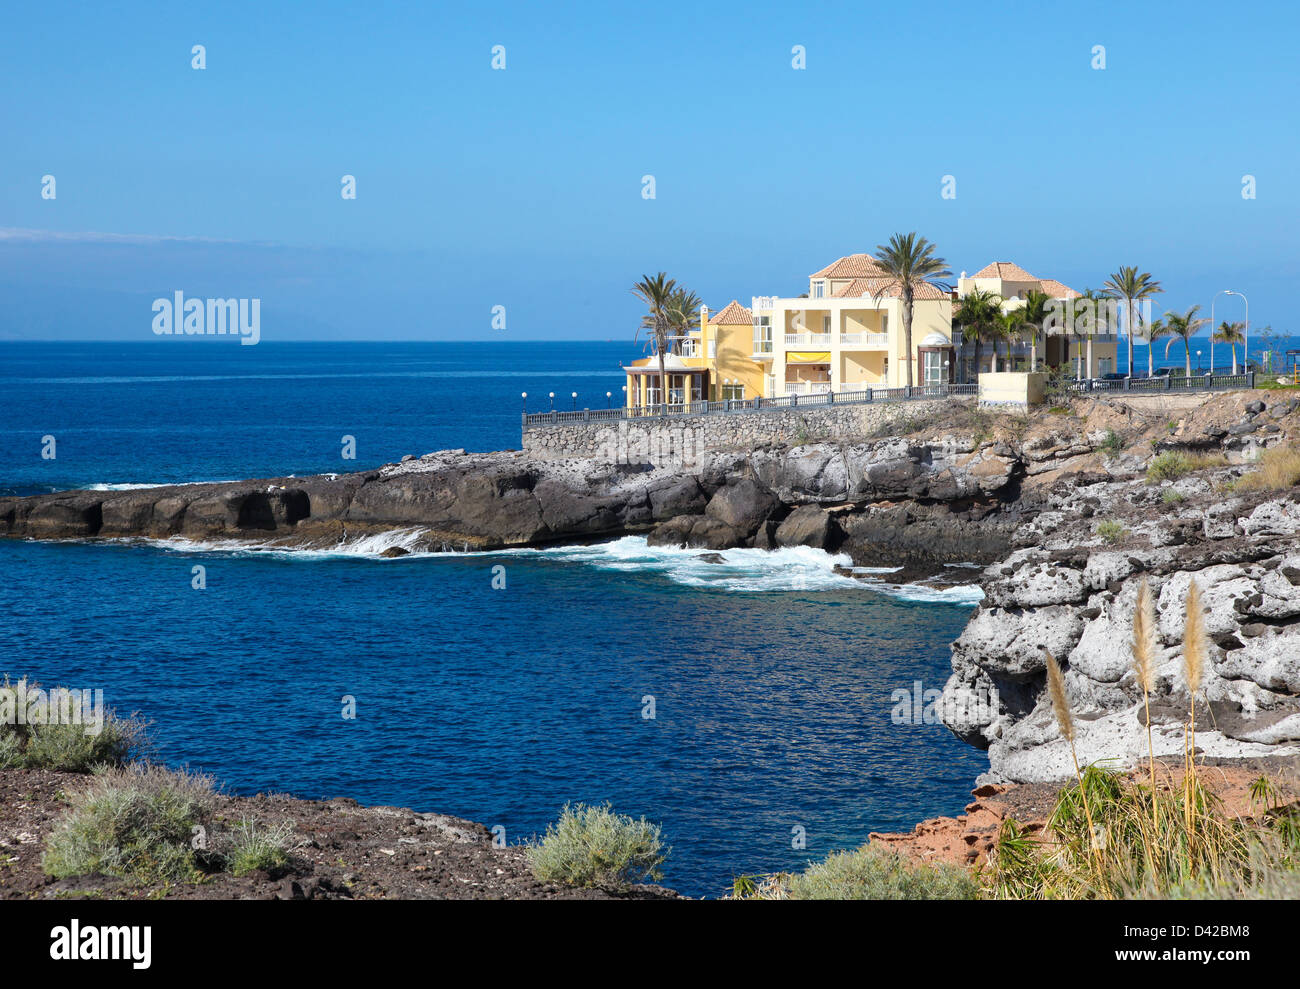 Bunte Ferienorte an der Costa Adeje auf Teneriffa, Kanarische Inseln, Spanien. Stockfoto